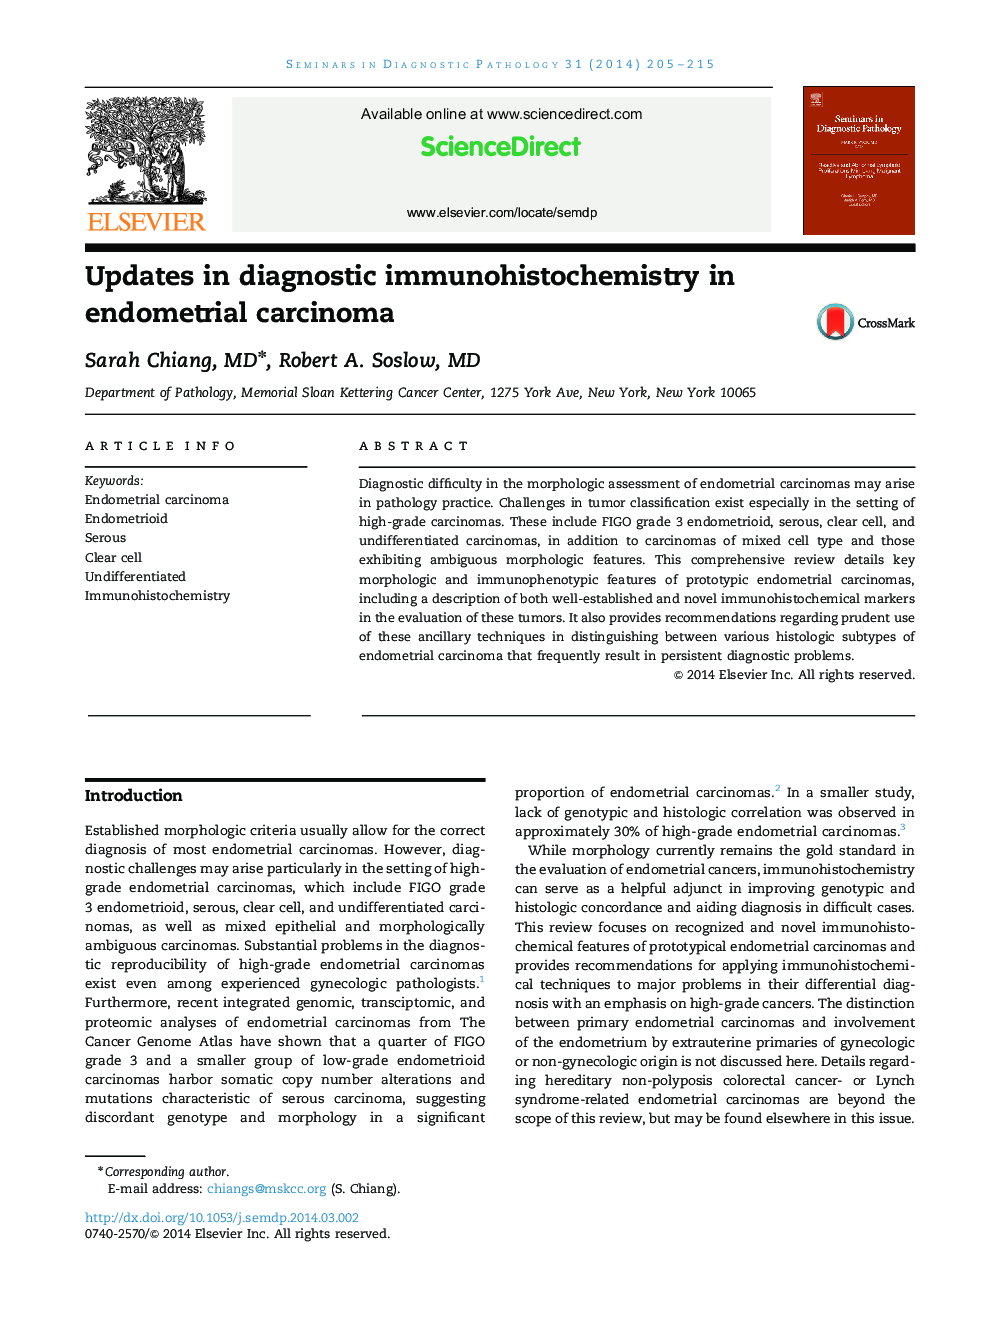 Updates in diagnostic immunohistochemistry in endometrial carcinoma